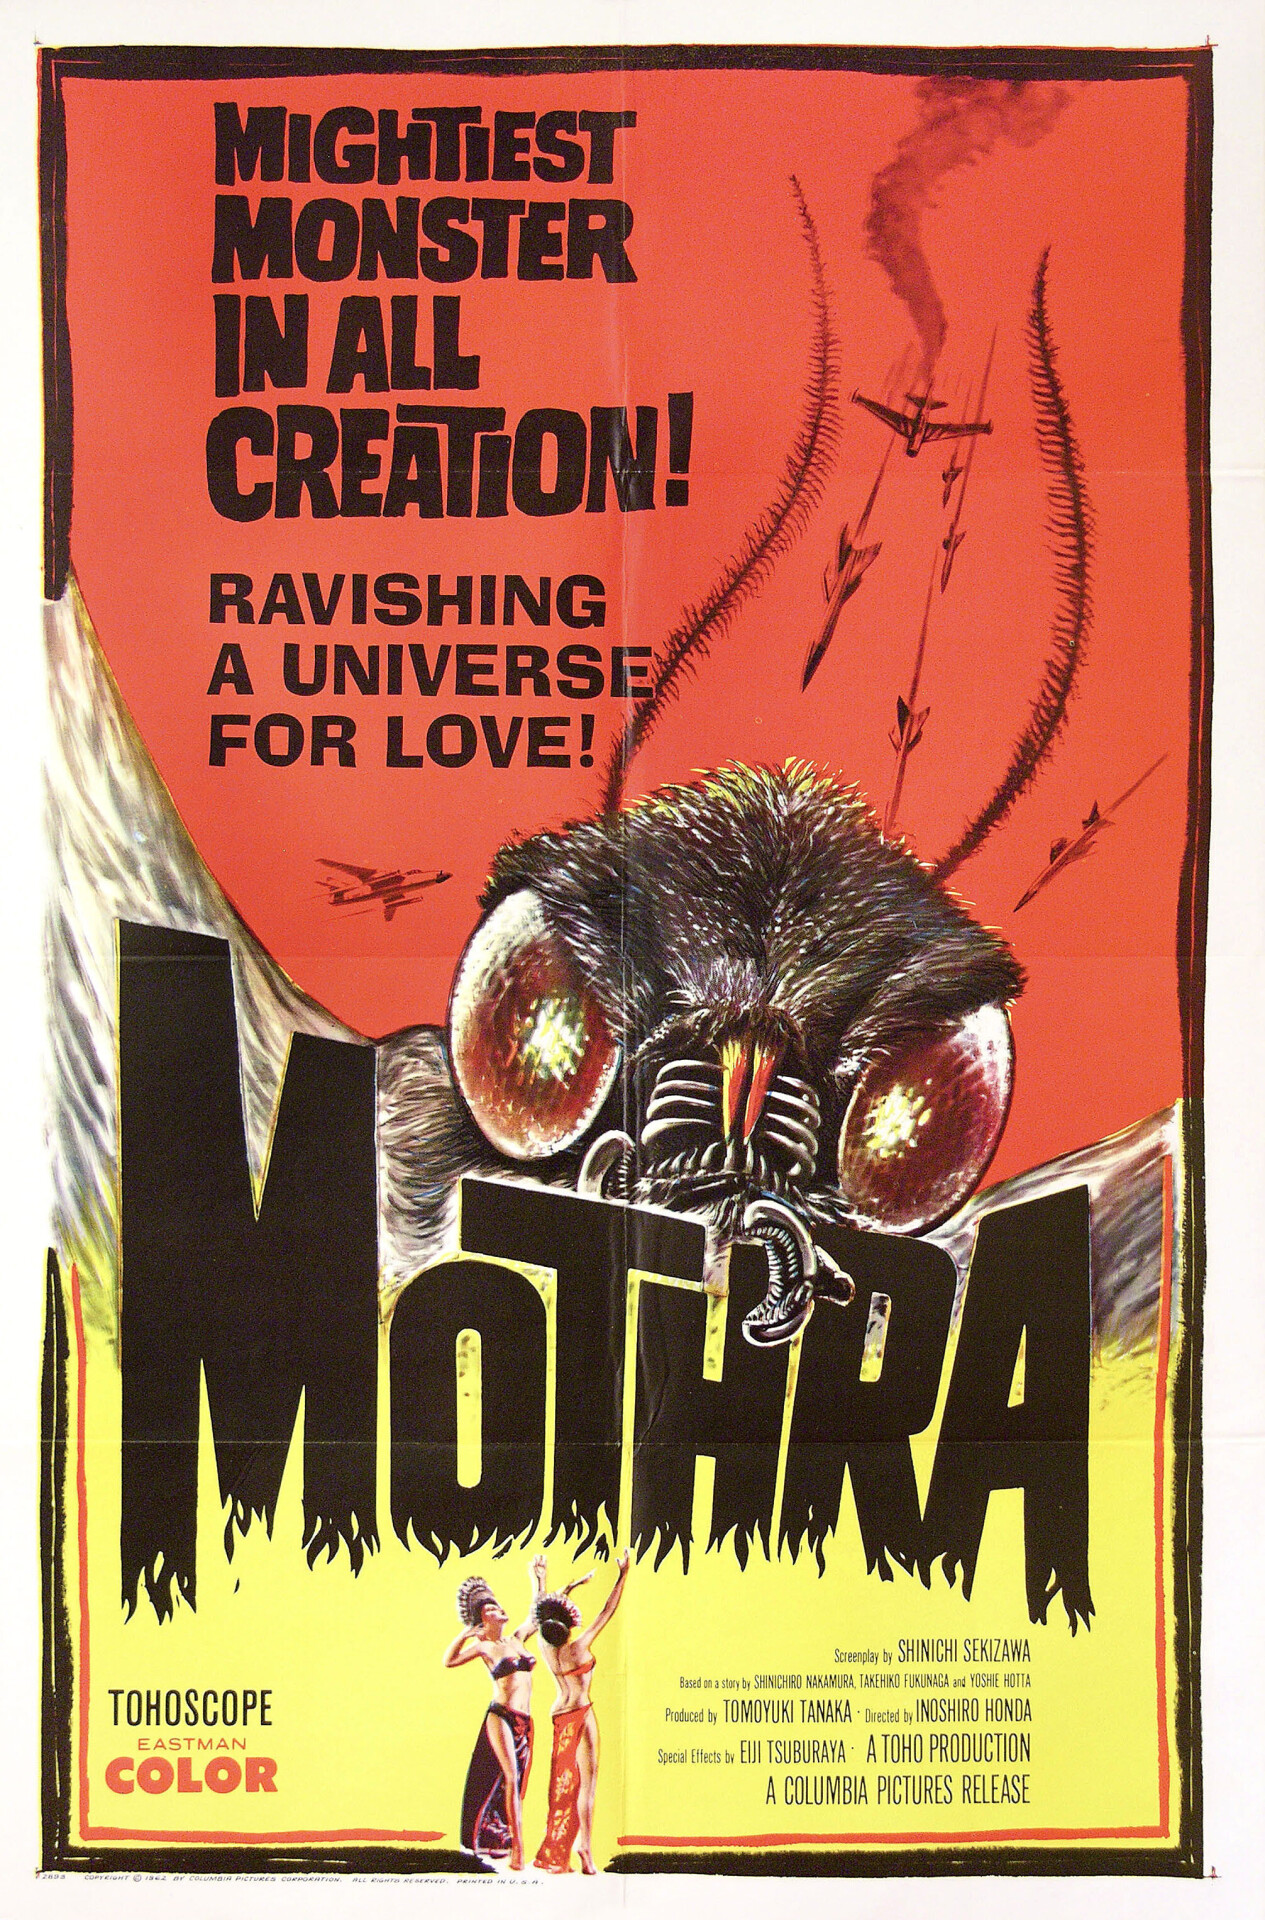 Мотра (Mothra, 1961), режиссёр Иширо Хонда, американский постер к фильму (монстры, 1962 год)